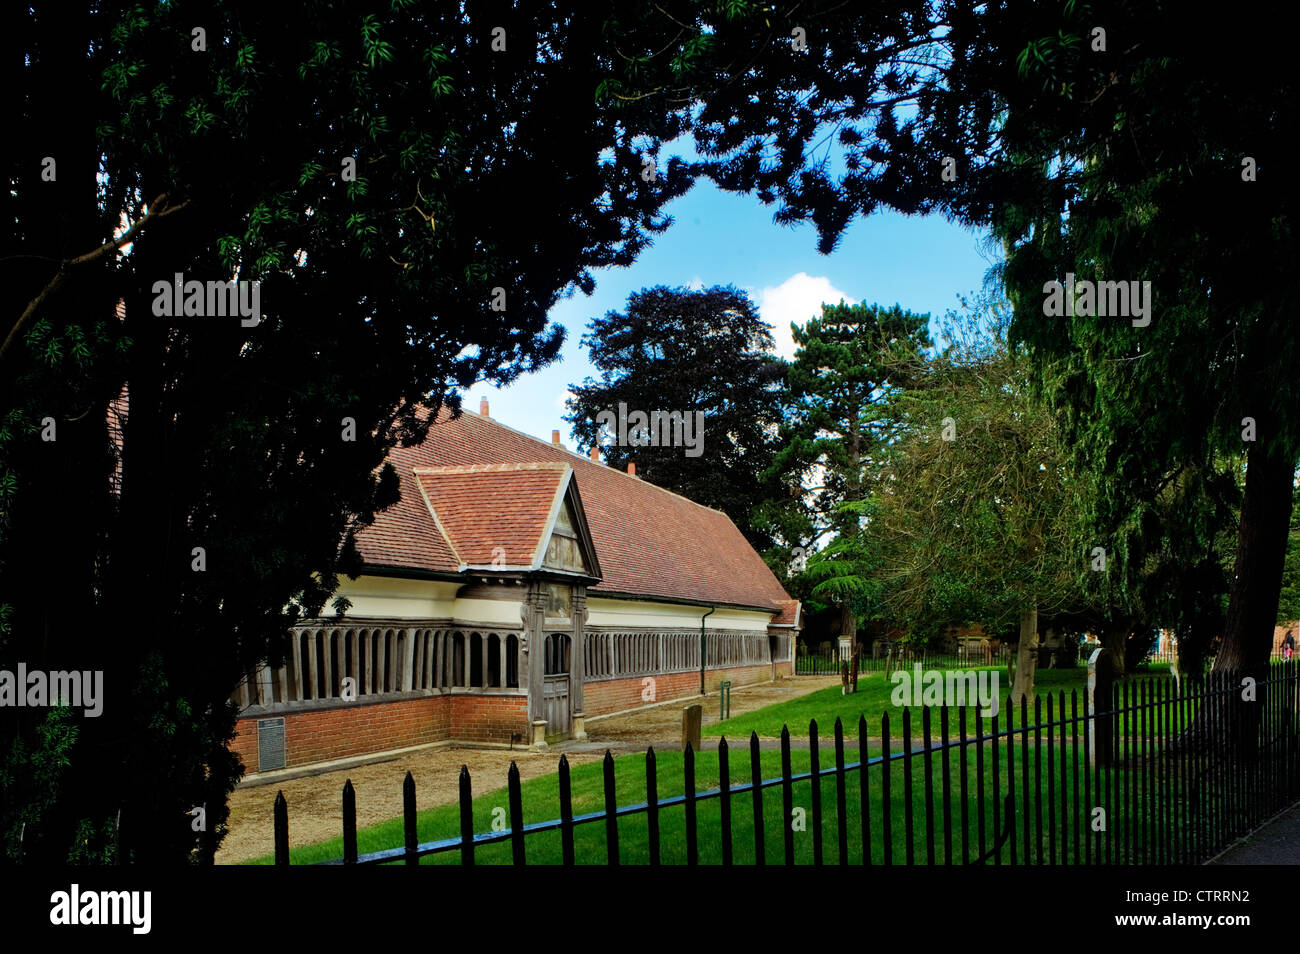 Medieval almshouses in Abingdon, Oxfordshire, UK Stock Photo